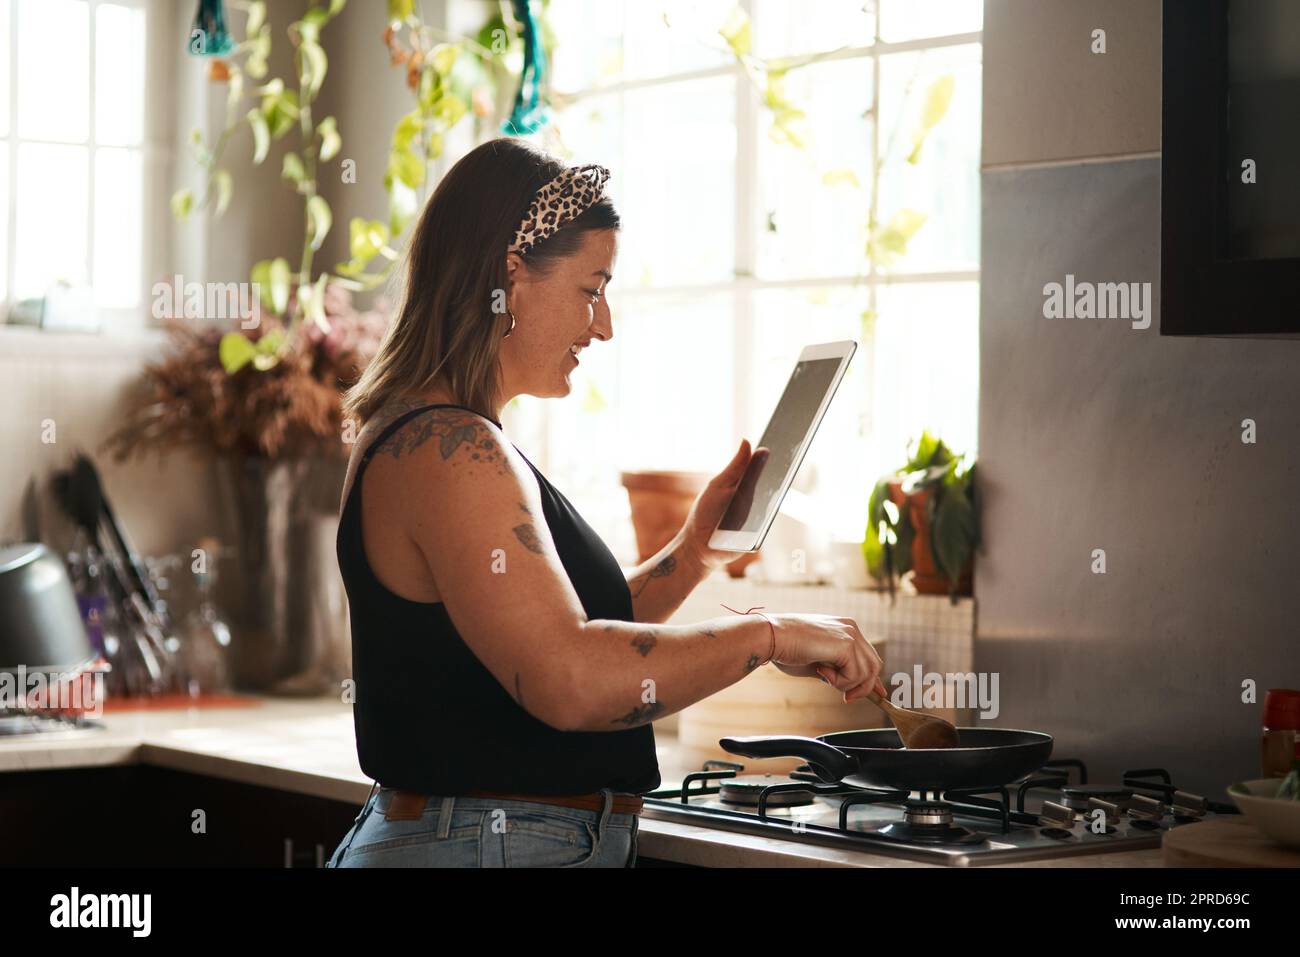 La technologie est un outil de cuisine génial. Une jeune femme utilisant une tablette numérique tout en préparant un repas à la maison. Banque D'Images